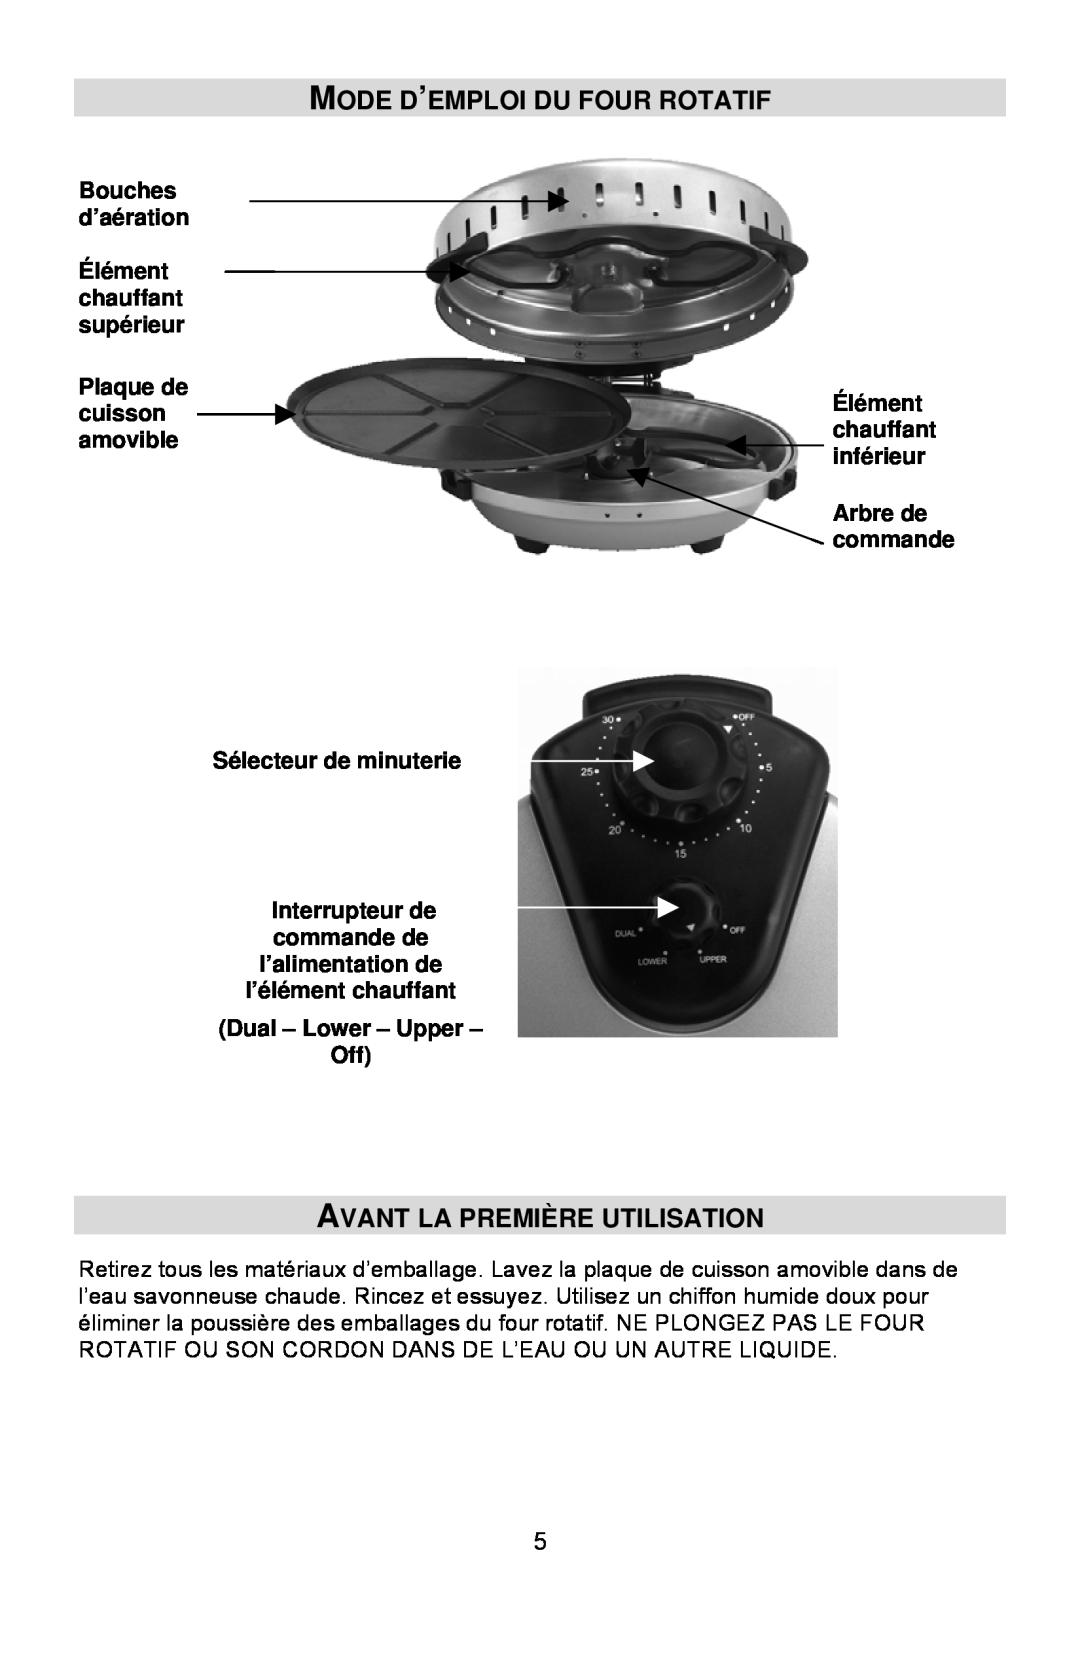 West Bend Rotary Oven Mode D’Emploi Du Four Rotatif, Avant La Première Utilisation, Dual – Lower – Upper – Off 